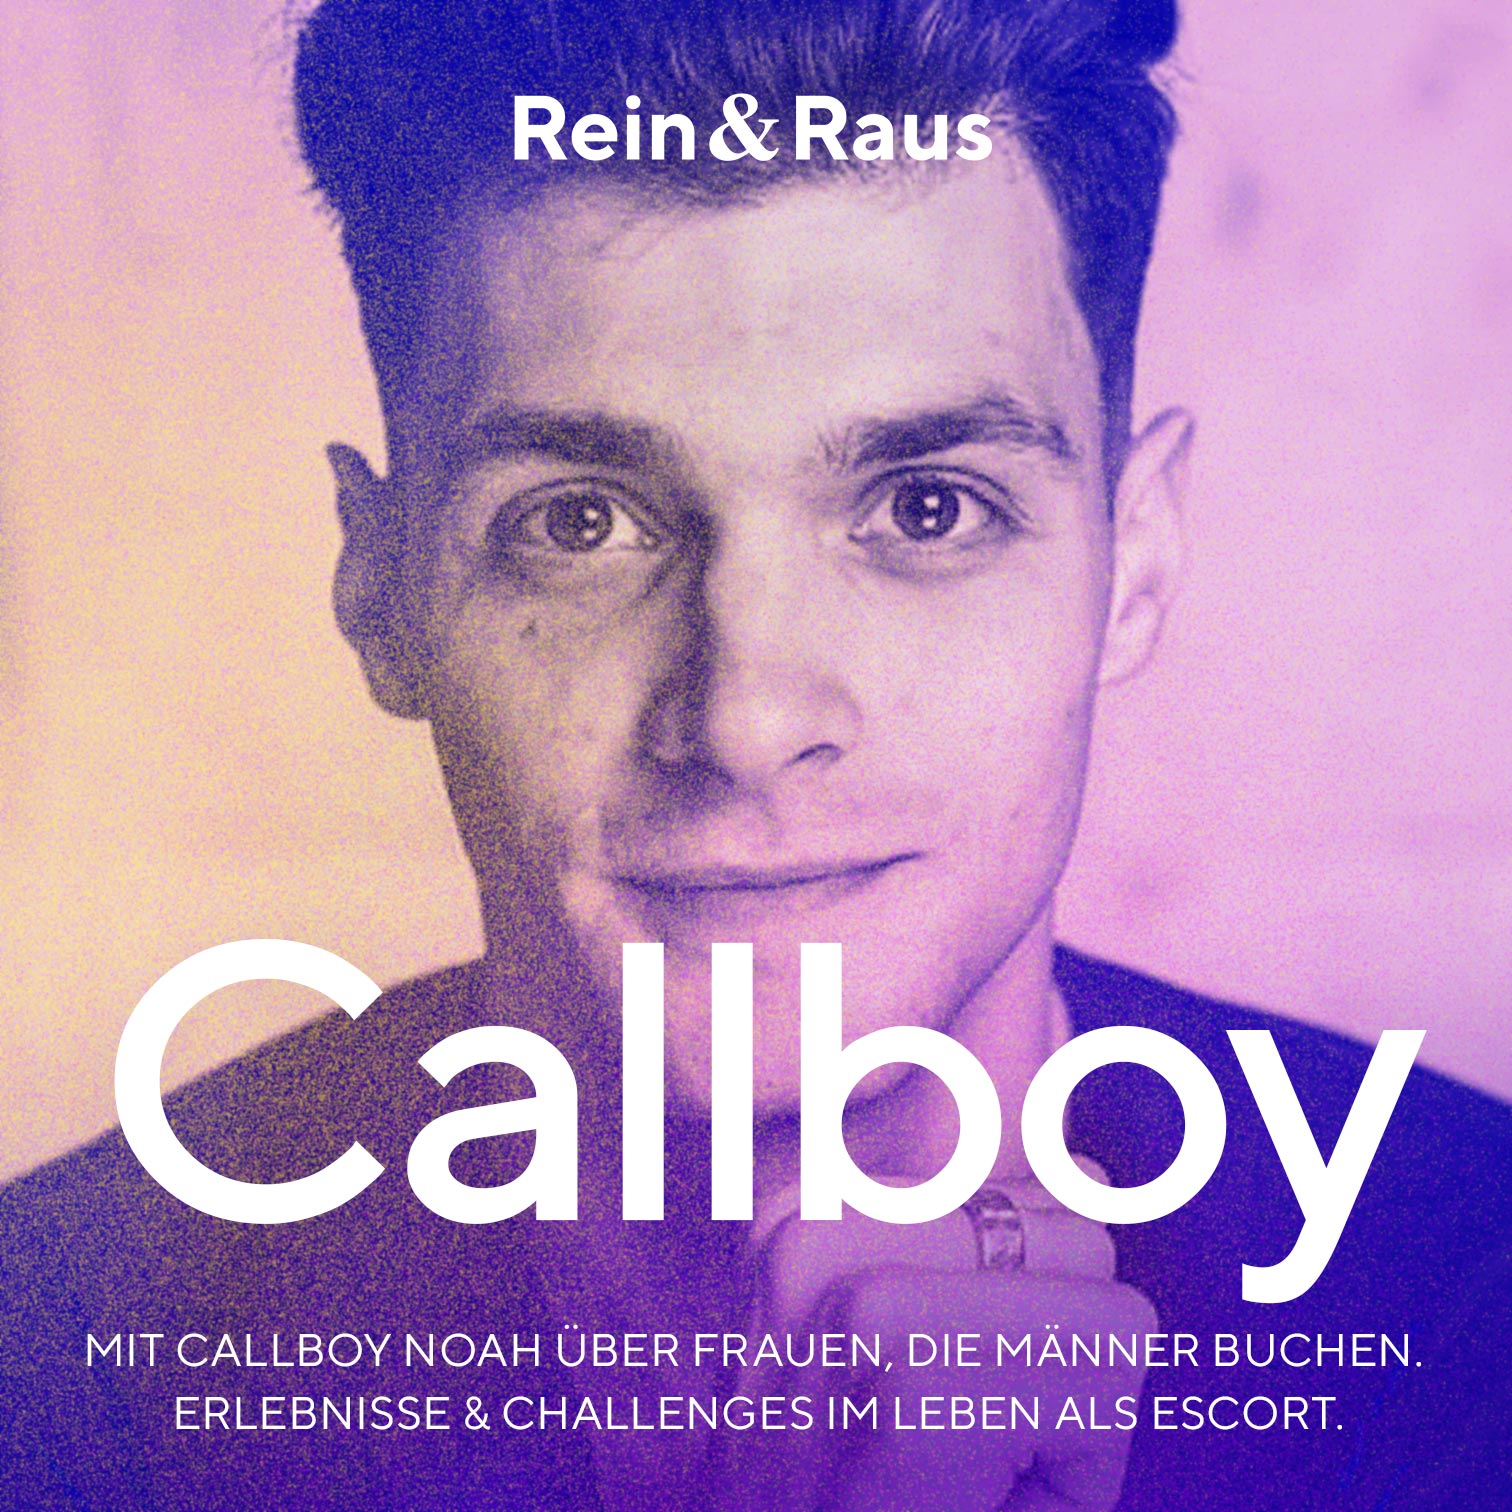 Folge 127 – Callboy › Mit Callboy Noah über Frauen, die Männer buchen – Erlebnisse & Challenges als Escort.